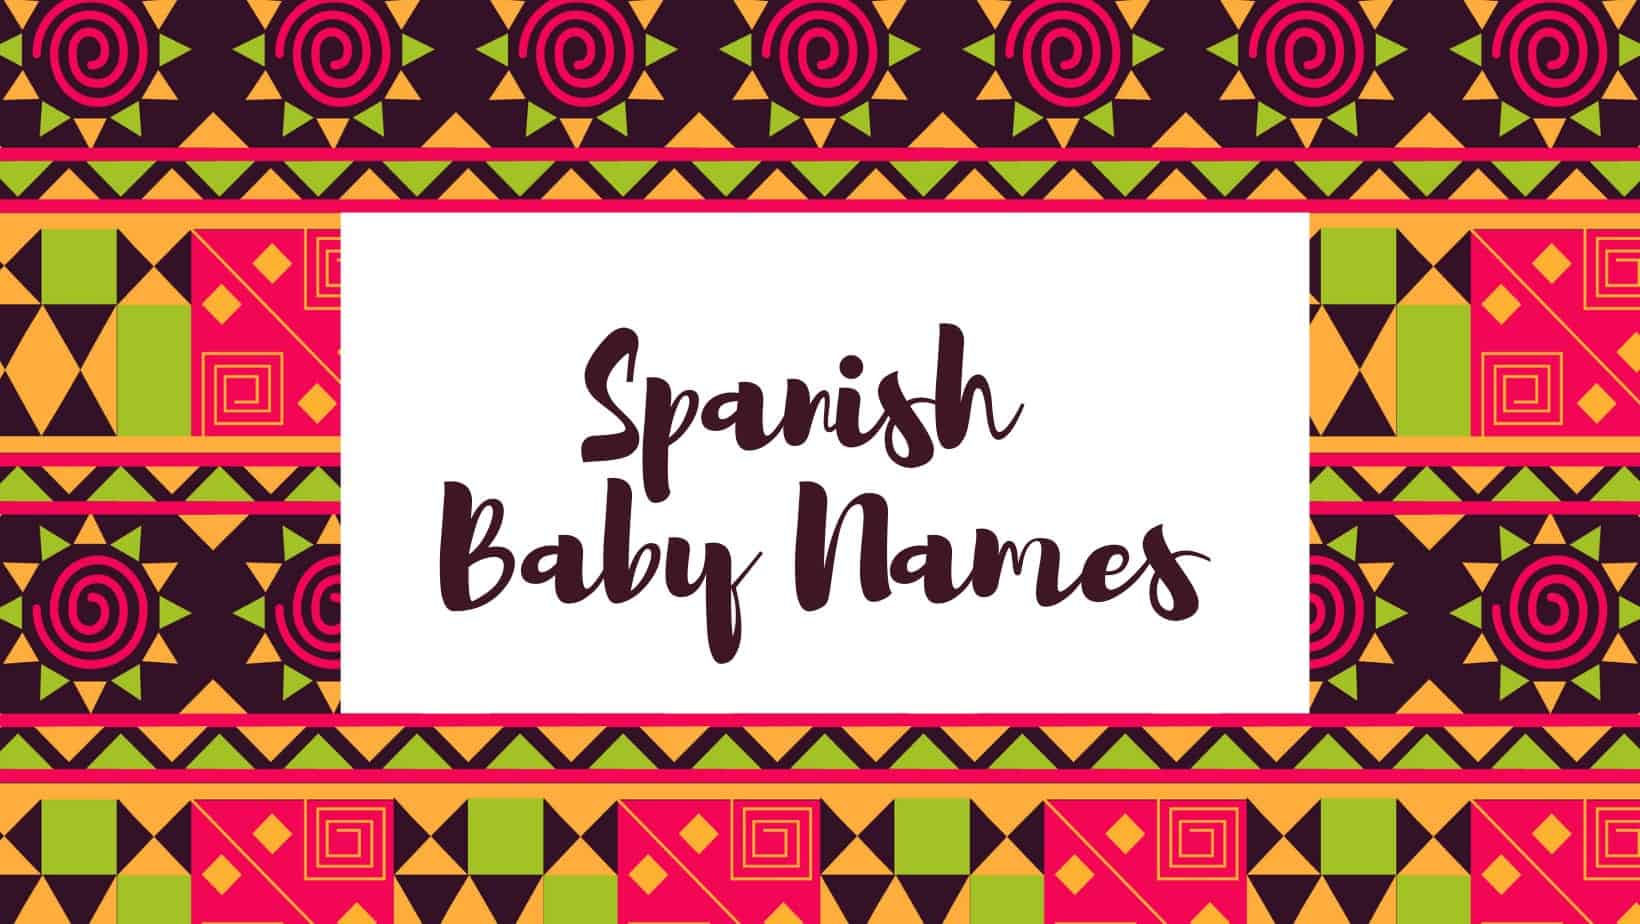 Spanish baby names